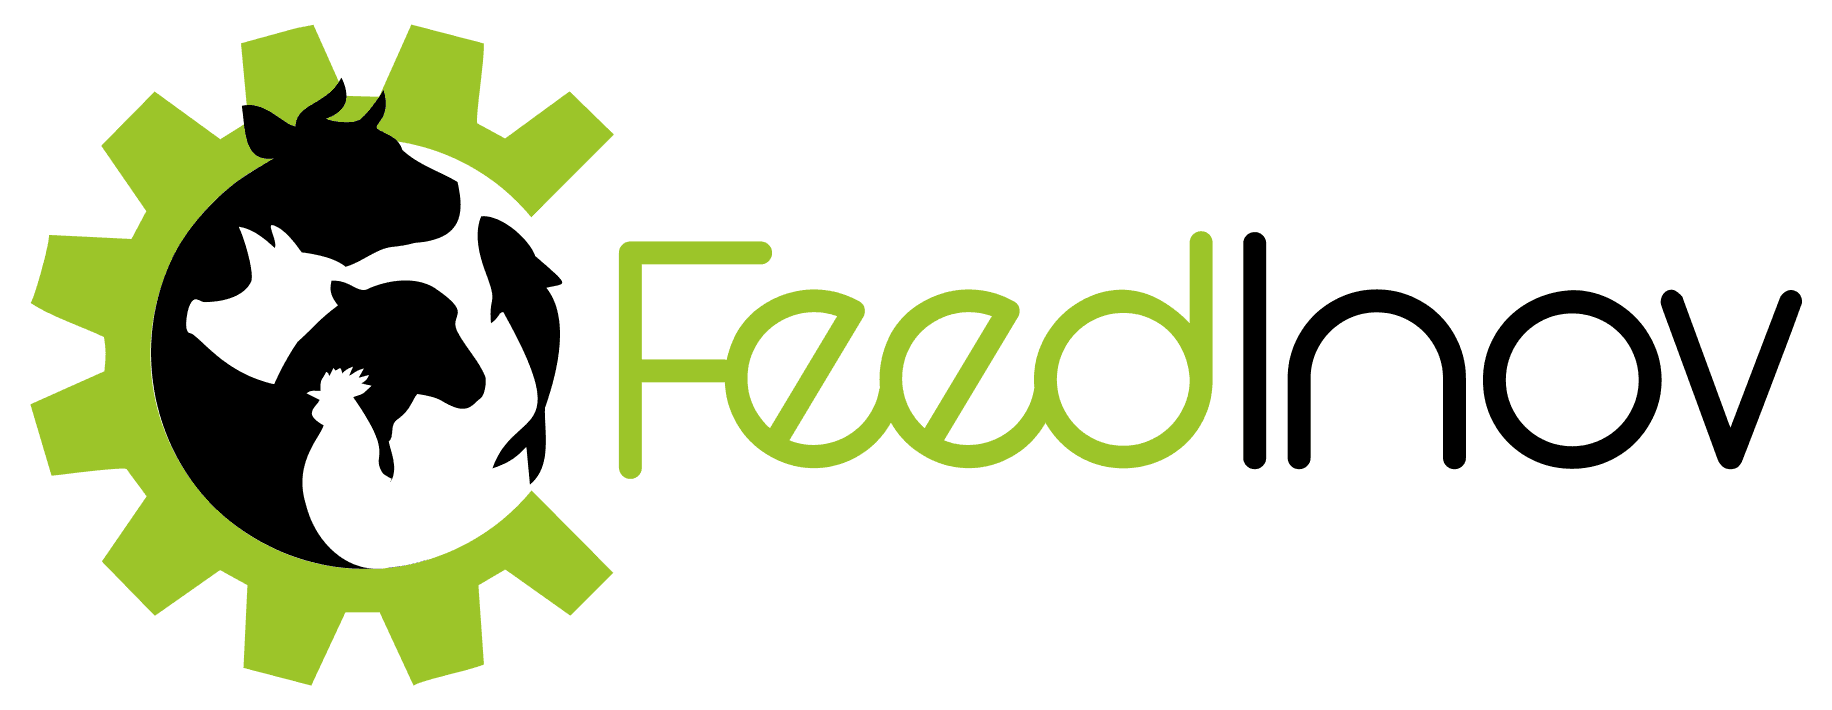 FeedInov - Associação para a inovação em nutrição e alimentação animal